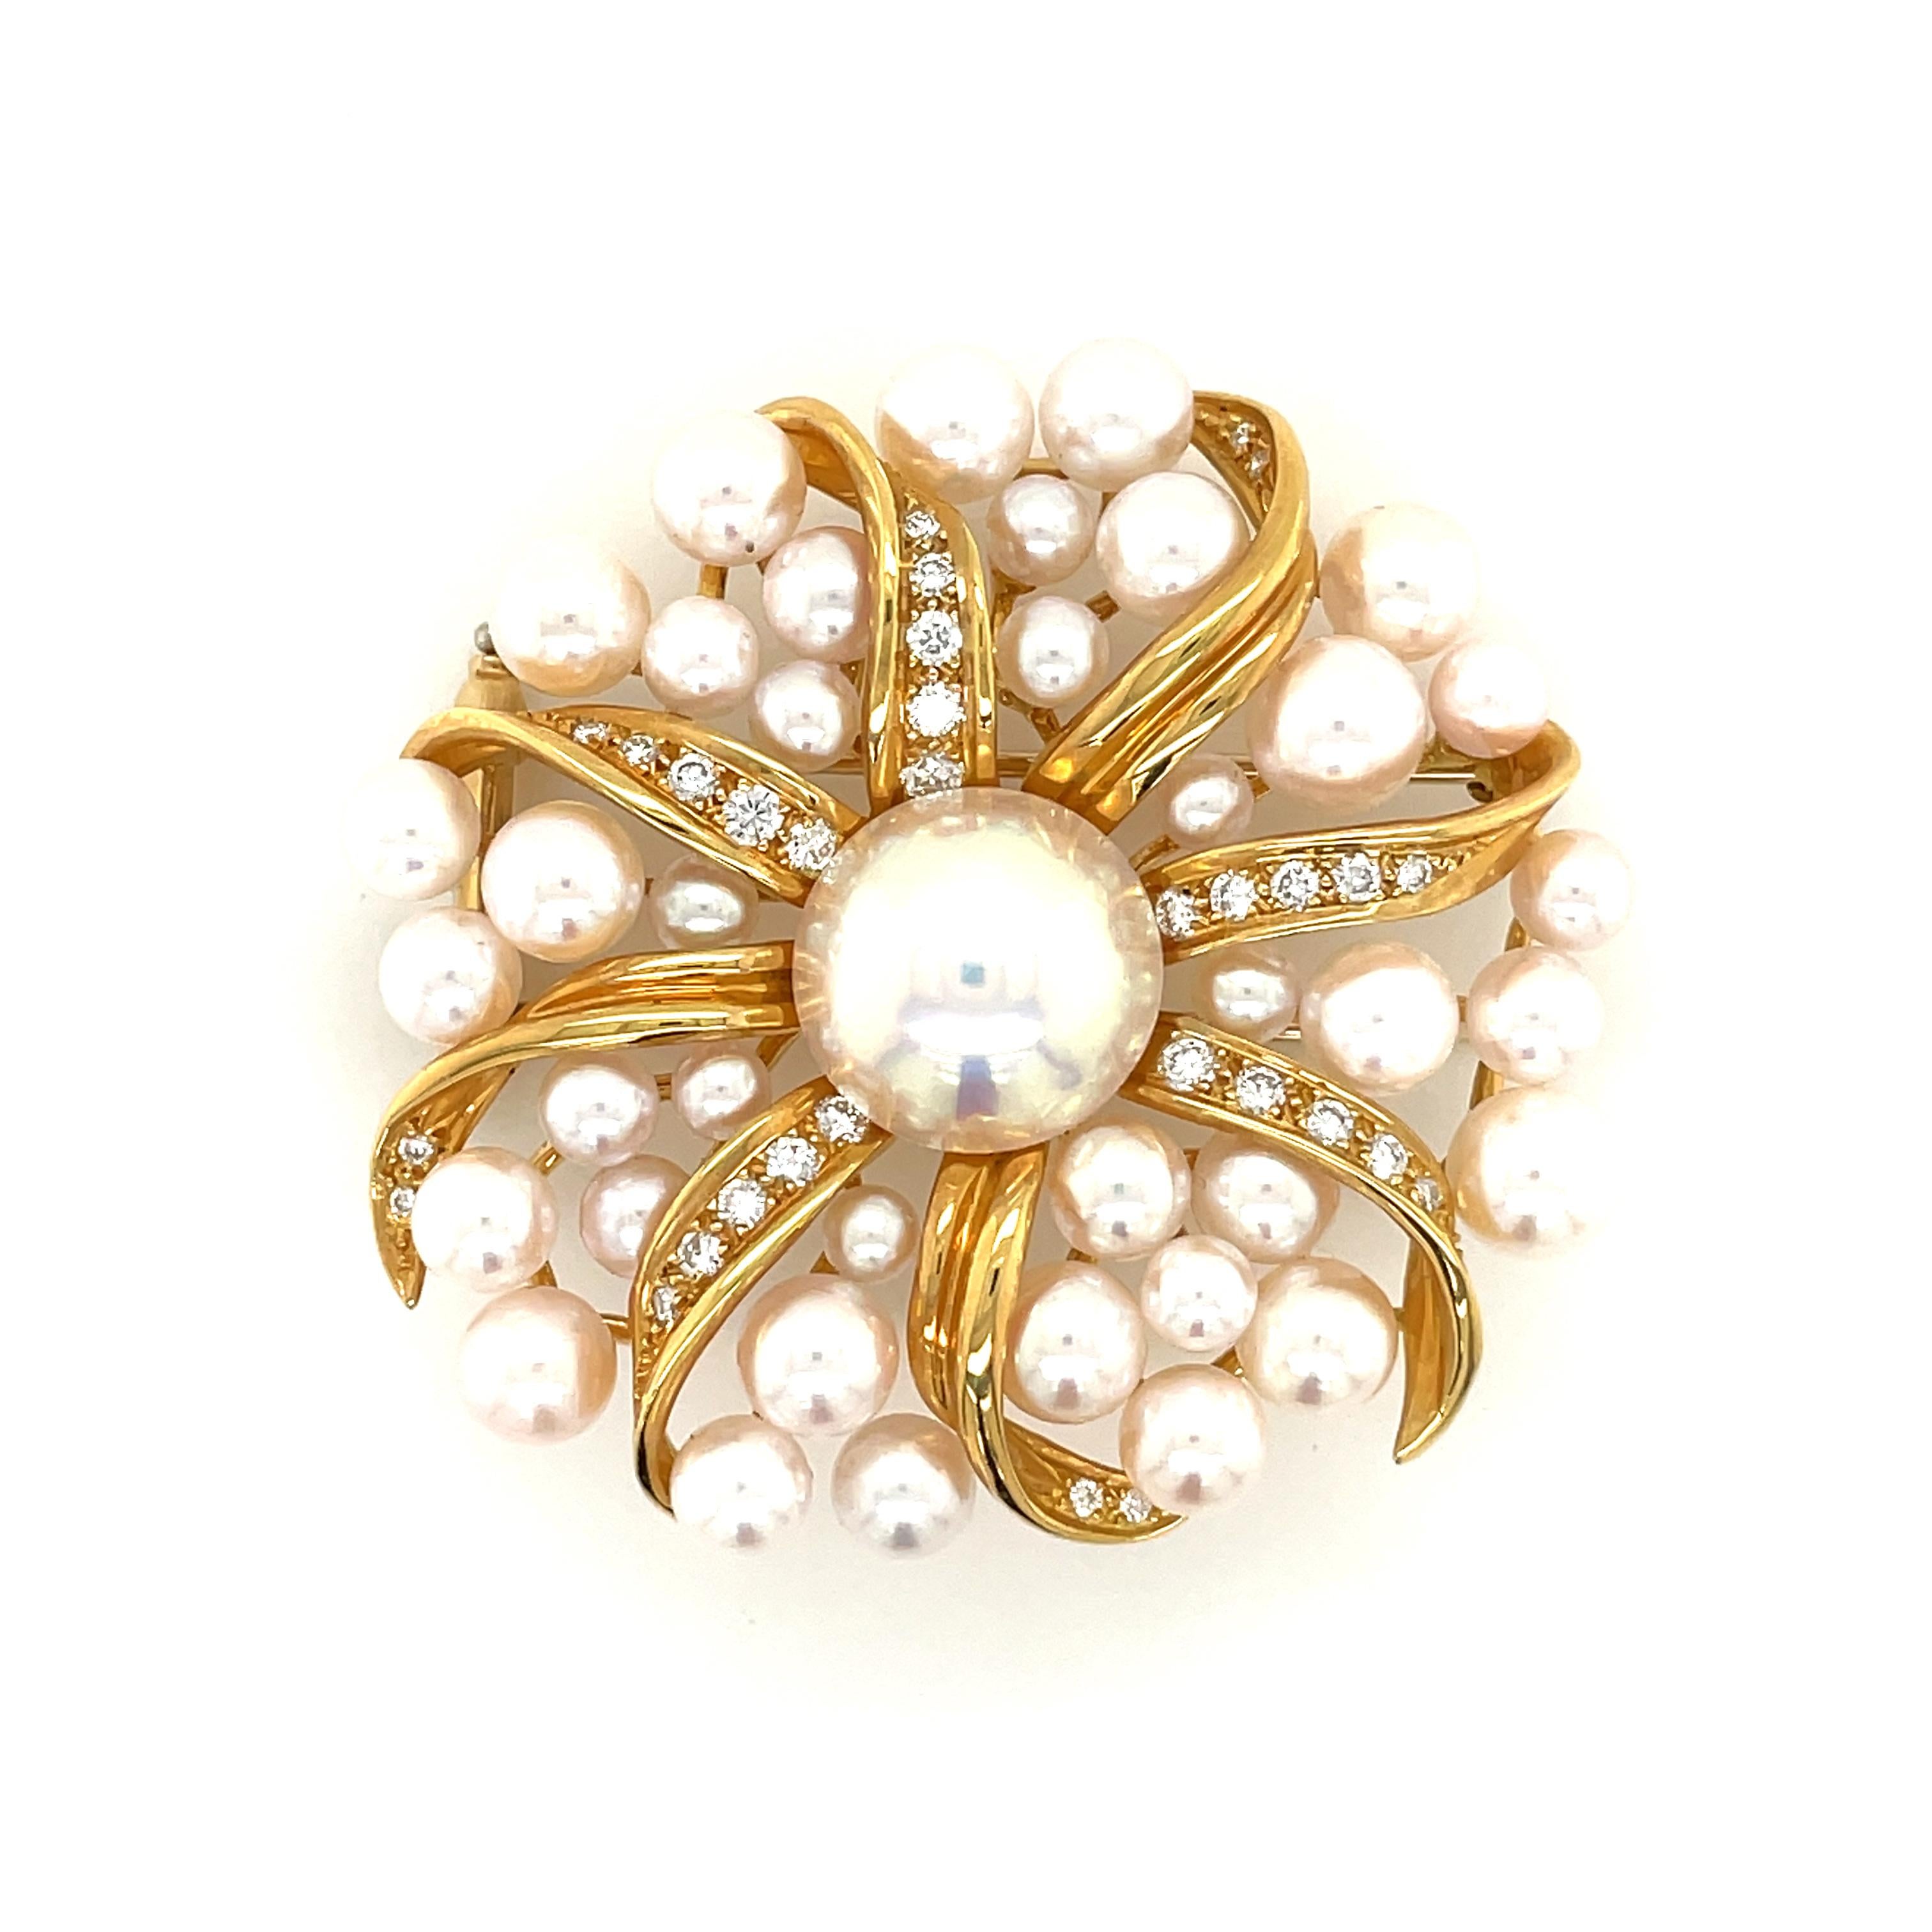 Schöne Brosche von Tiffany & Co, ist entworfen, um wie eine Blume aussehen, circa 1990'.

Die Brosche wurde aus massivem 18-karätigem Gelbgold gefertigt und ist mit einer Vielzahl von 5,5-8,5 mm großen Perlen und einer großen Mabe-Perle in der Mitte